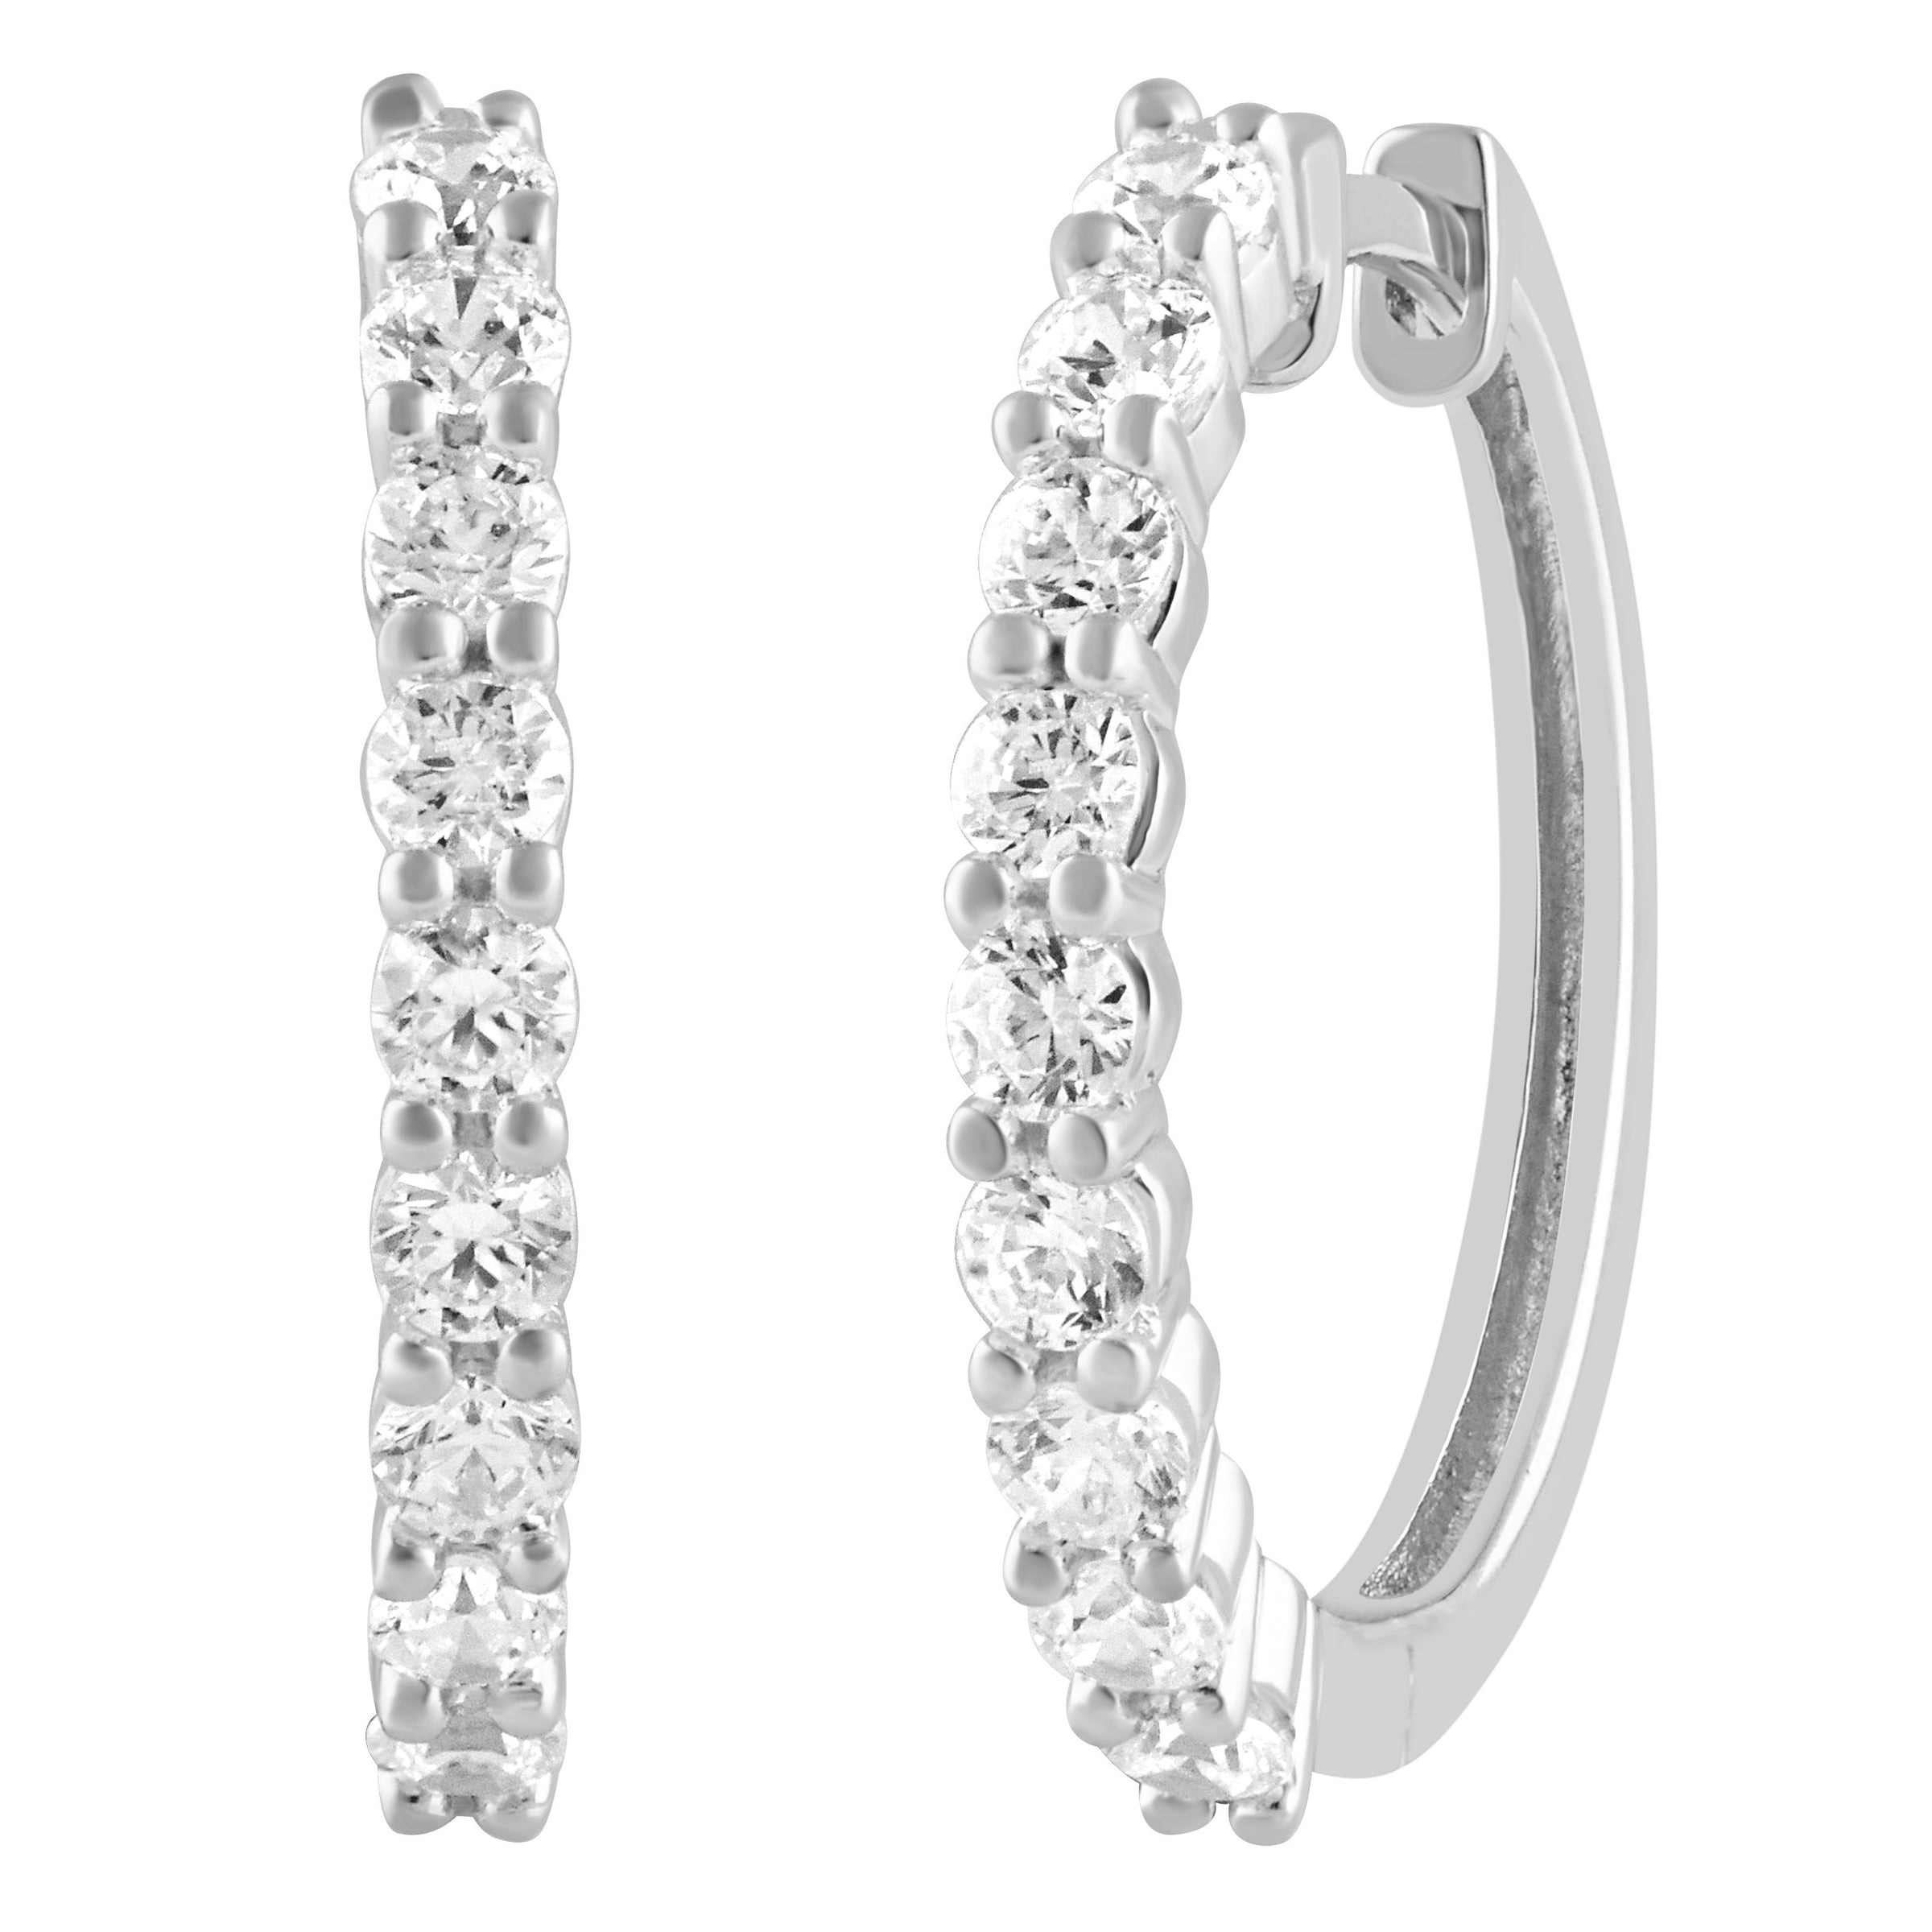 Meera Hoop Earrings with 1.00ct of Laboratory Grown Diamonds in 9ct White Gold Earrings Meera 